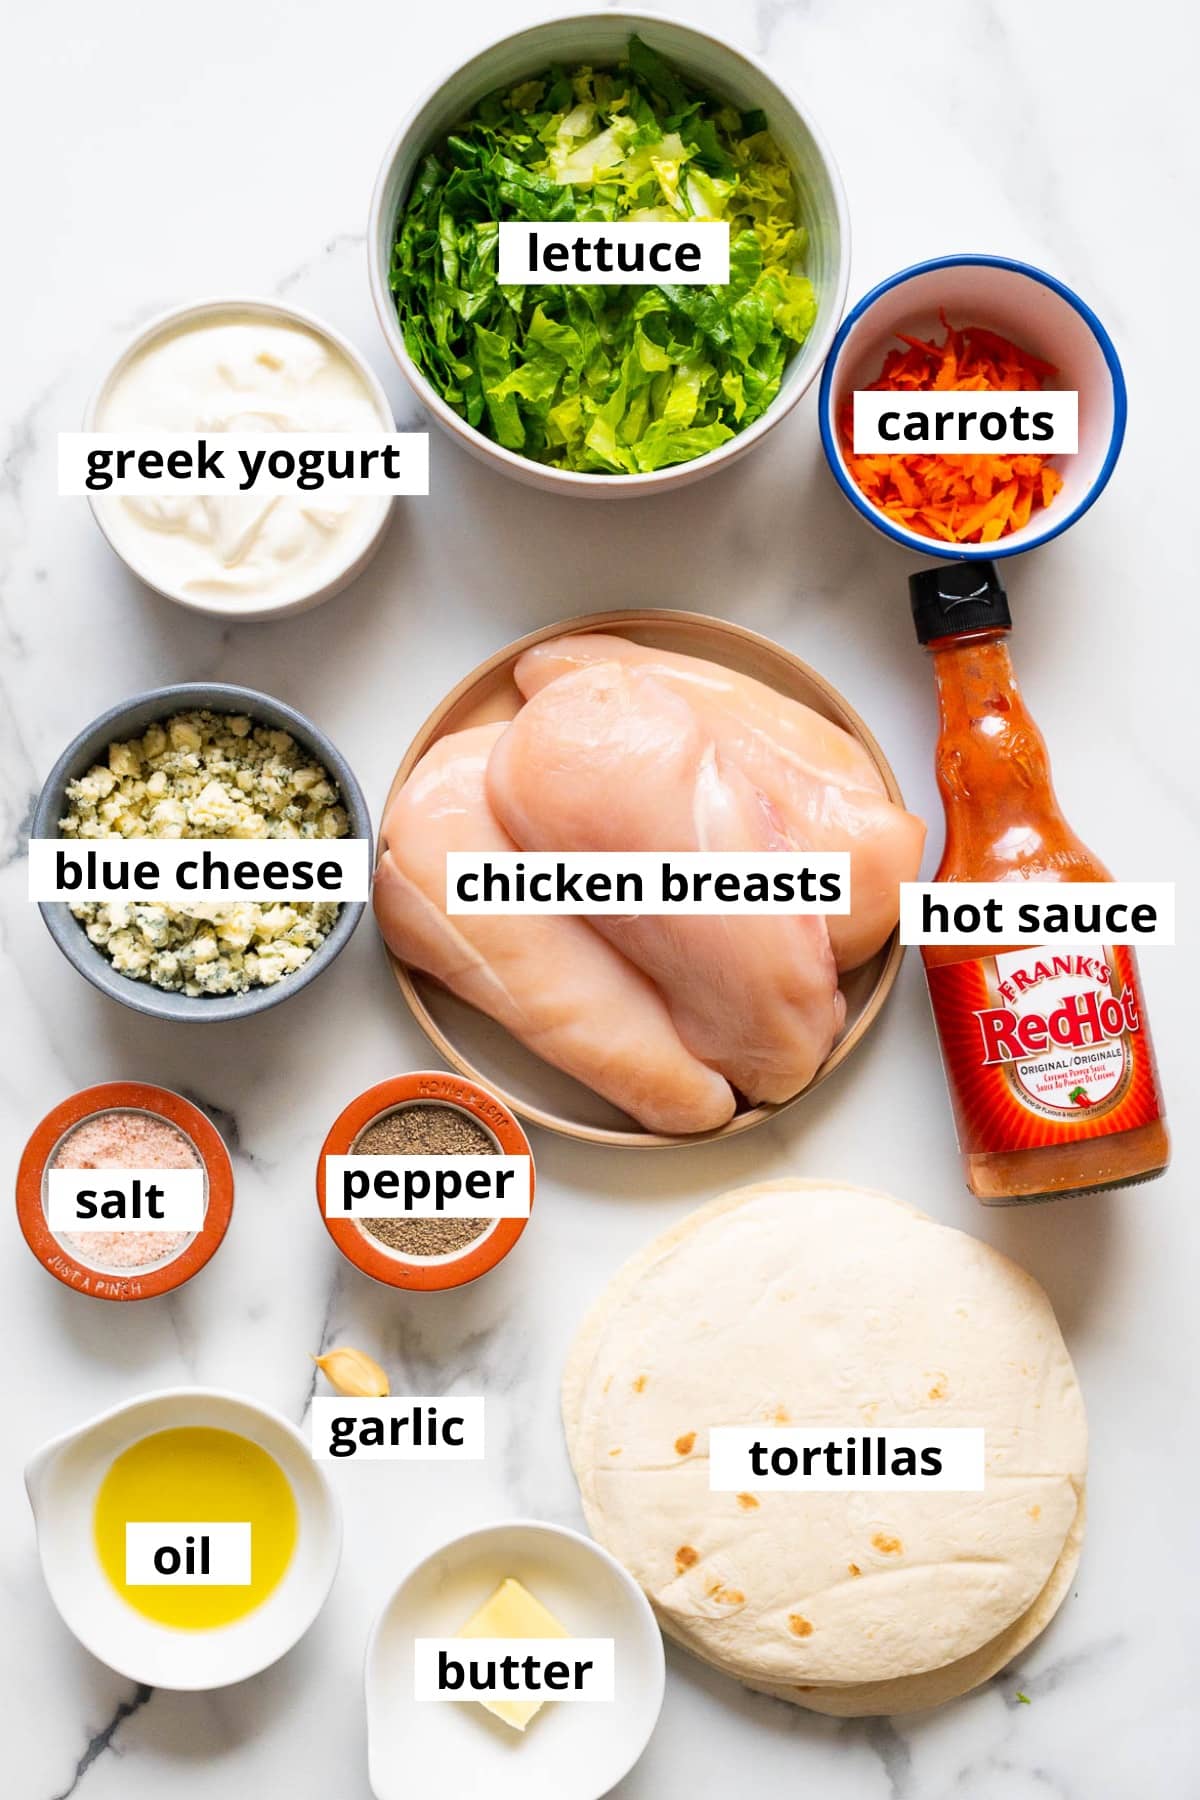 Chicken breasts, blue cheese, hot sauce, carrots, lettuce, yogurt, salt, pepper, tortillas, garlic, oil, butter.